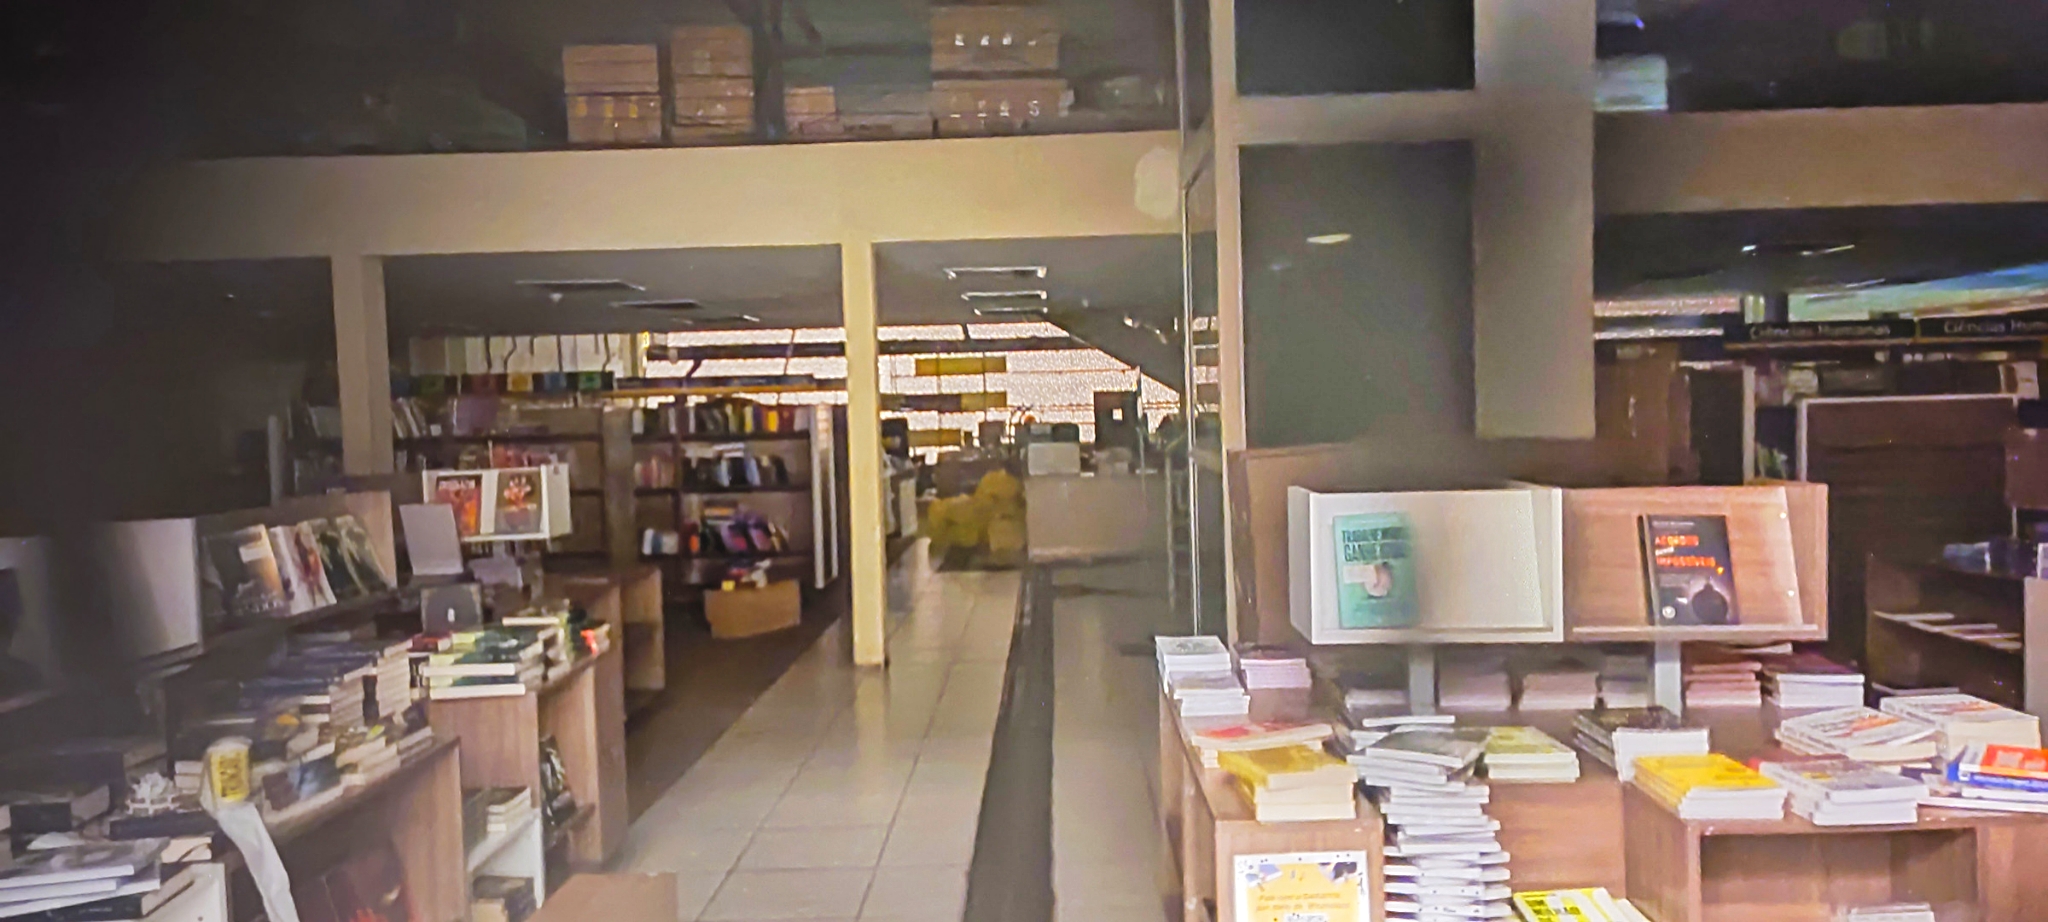 Saraiva e os livros presos na loja do Midway